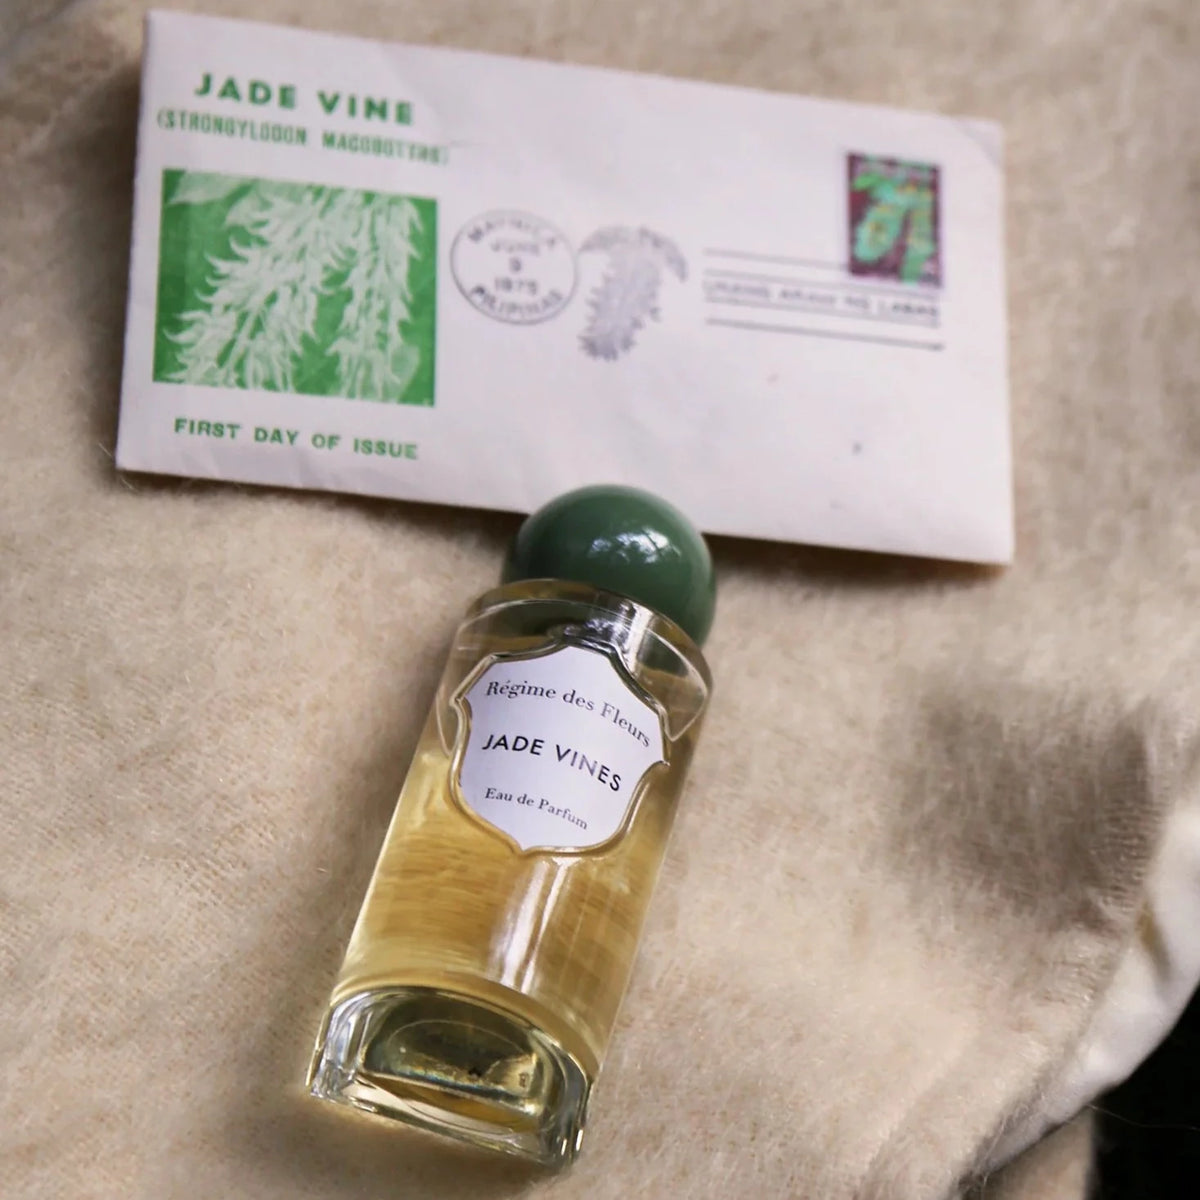 Jade Vines